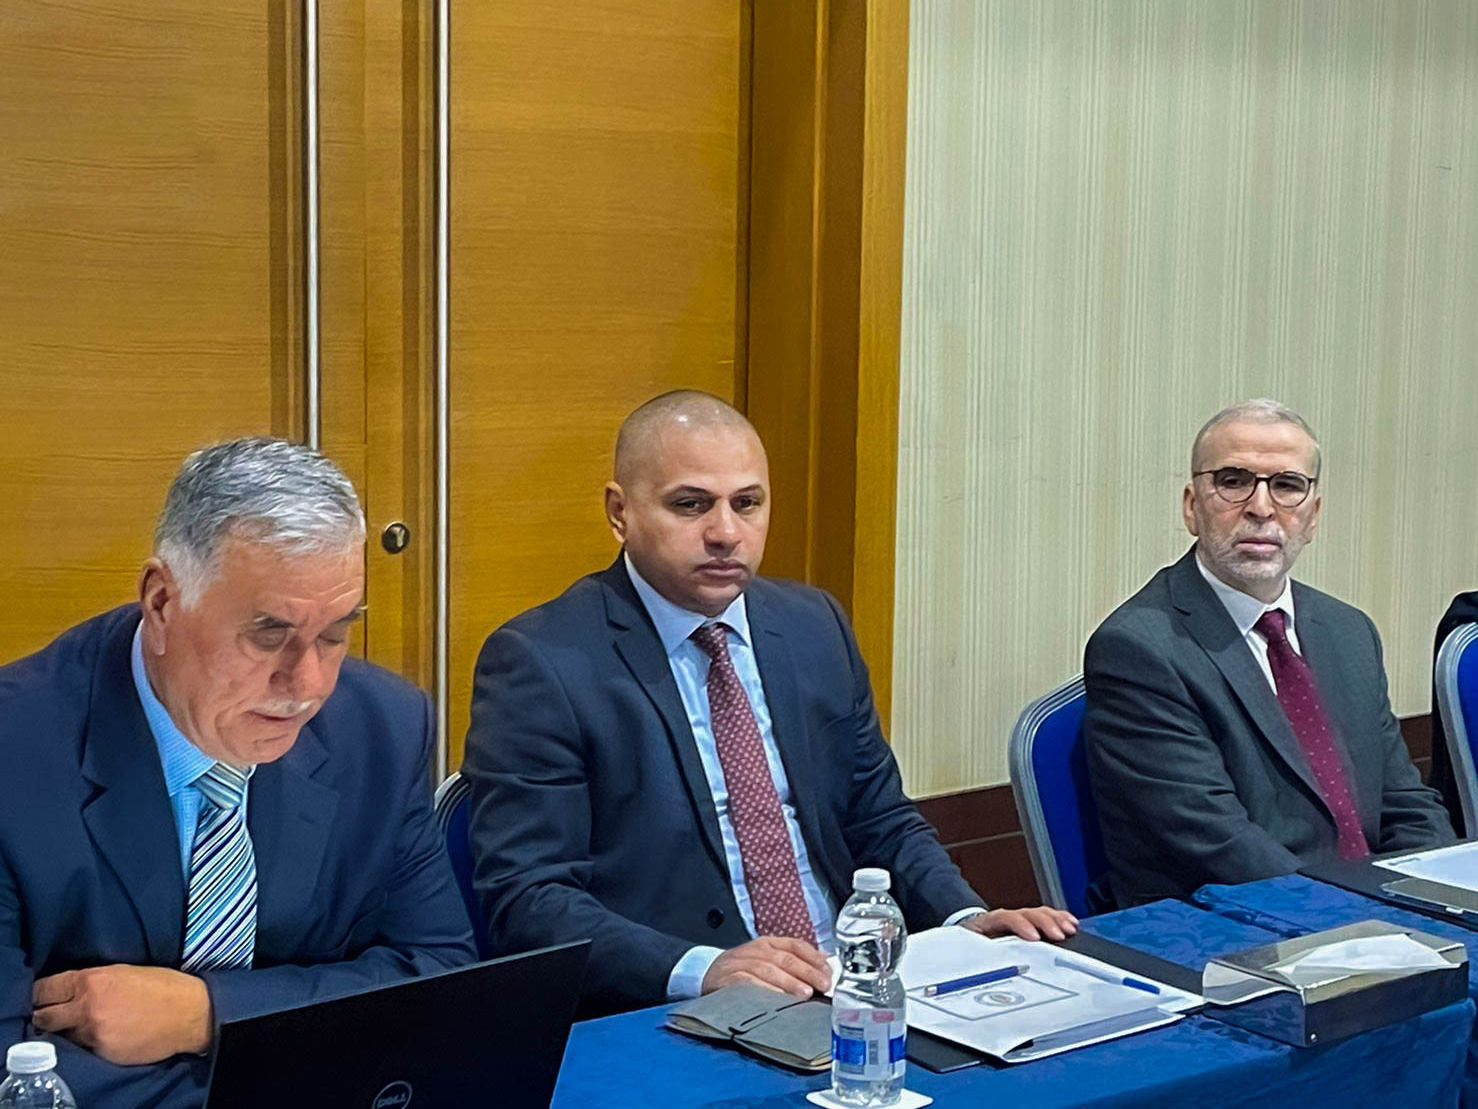 الجمعية العمومية للشركة الليبية للأسمدة تعقد اجتماعها الأول لسنة 2022م